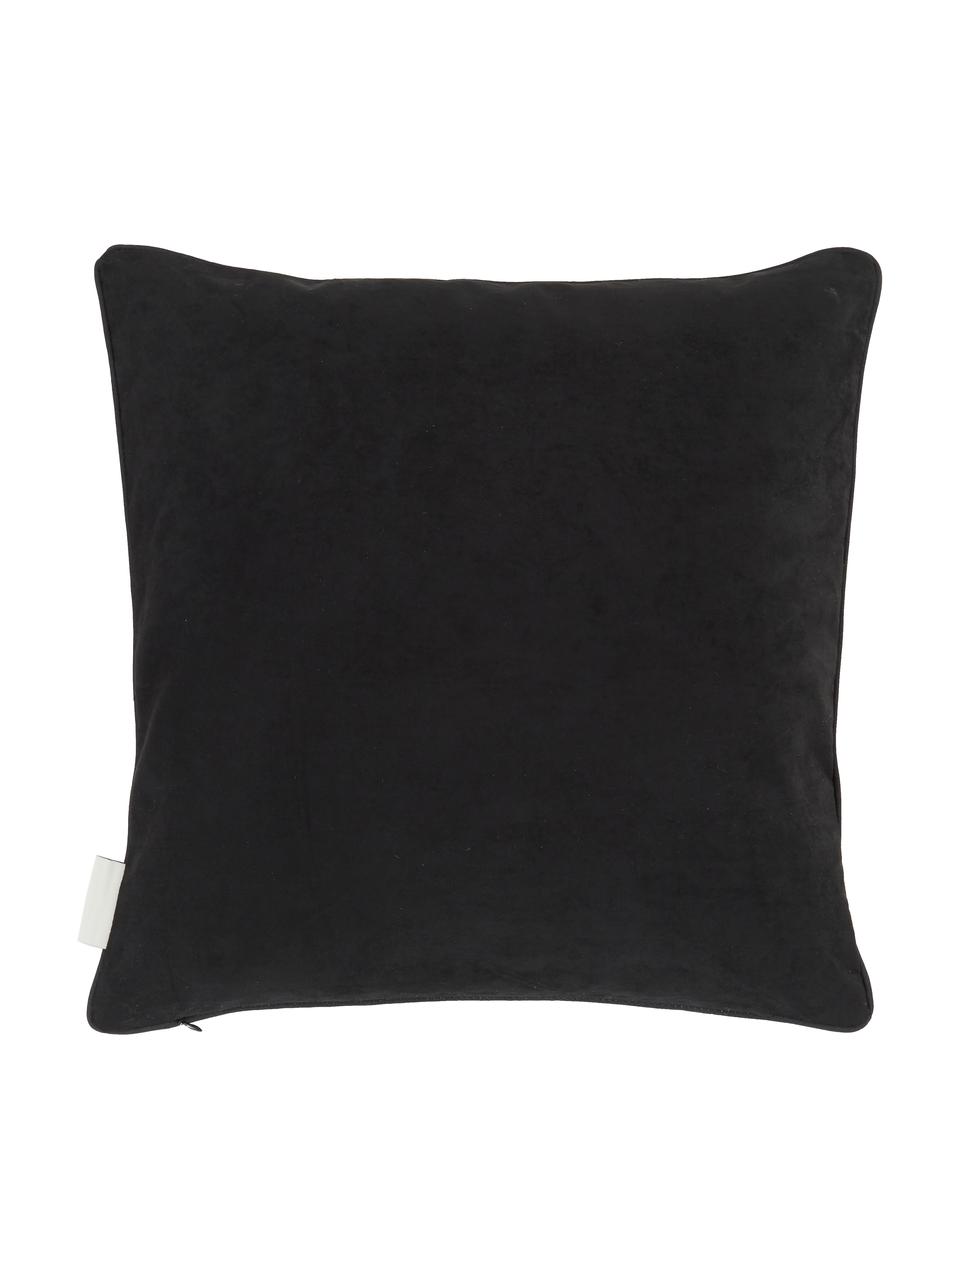 Poduszka z haftem z wypełnieniem Tina, 80% bawełna, 20% poliester, Czarny, beżowy, S 45 x D 45 cm